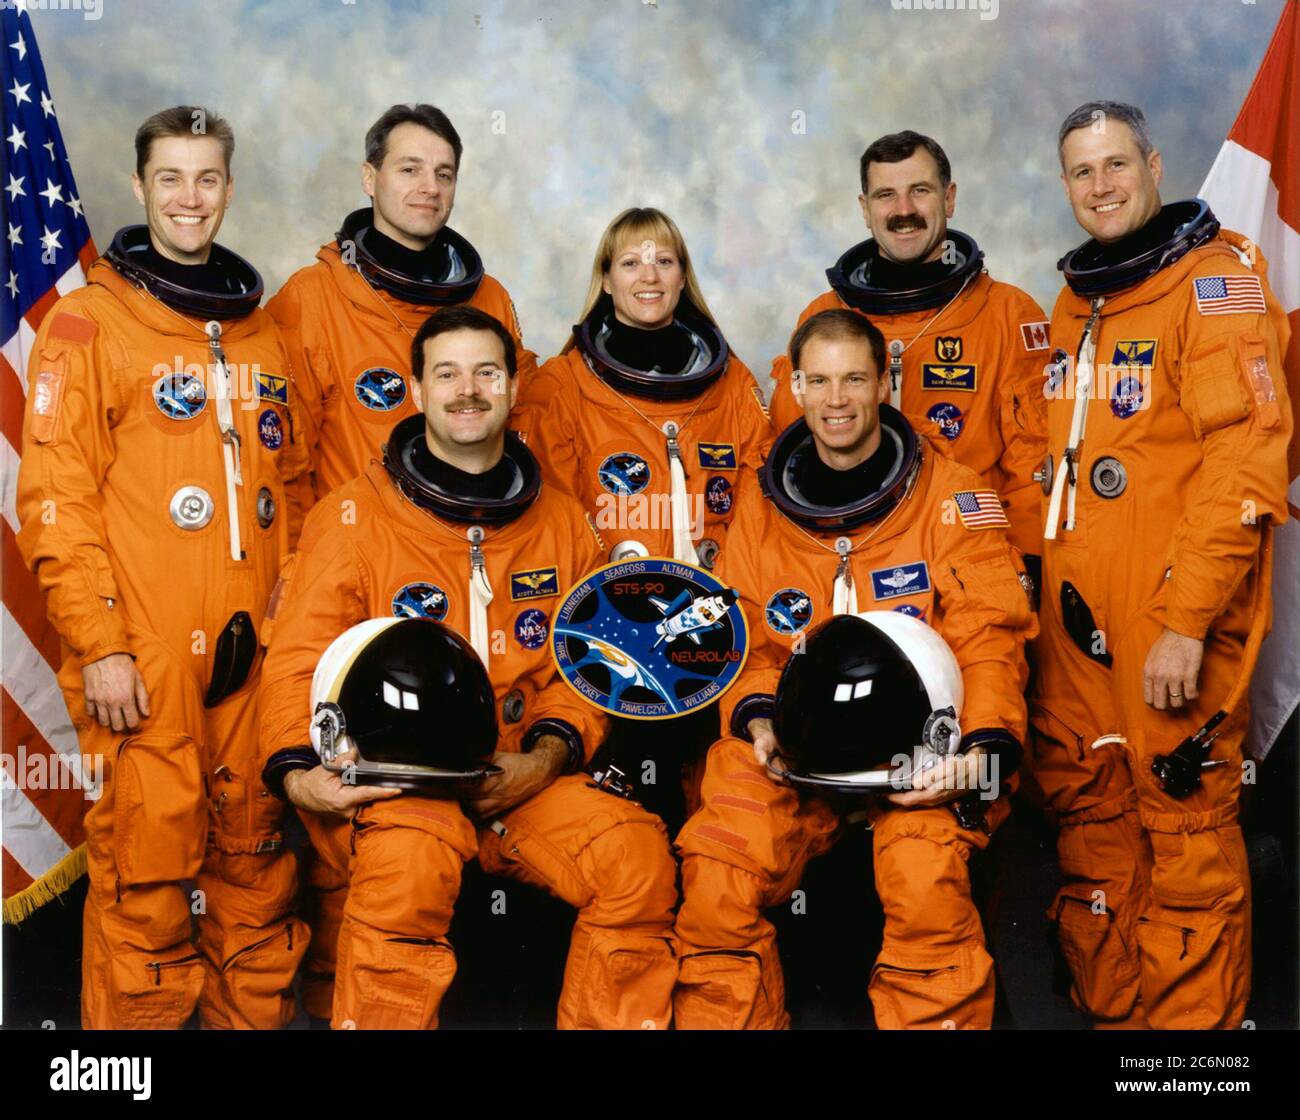 STS-90 RITRATTO DELL'EQUIPAGGIO. ANTERIORE (L-R) SCOTT D. ALTMAN, PILOTA; RICHARD A. SEARFOSS, COMANDANTE; IN PIEDI (L-R): JAMES A. PAWELECZYK; RICHARD M. LINNEHAN, KATHRYN P. HIRE; DAFYDD, R. WILLIAMS; JAY C. BUCKEY. Foto Stock